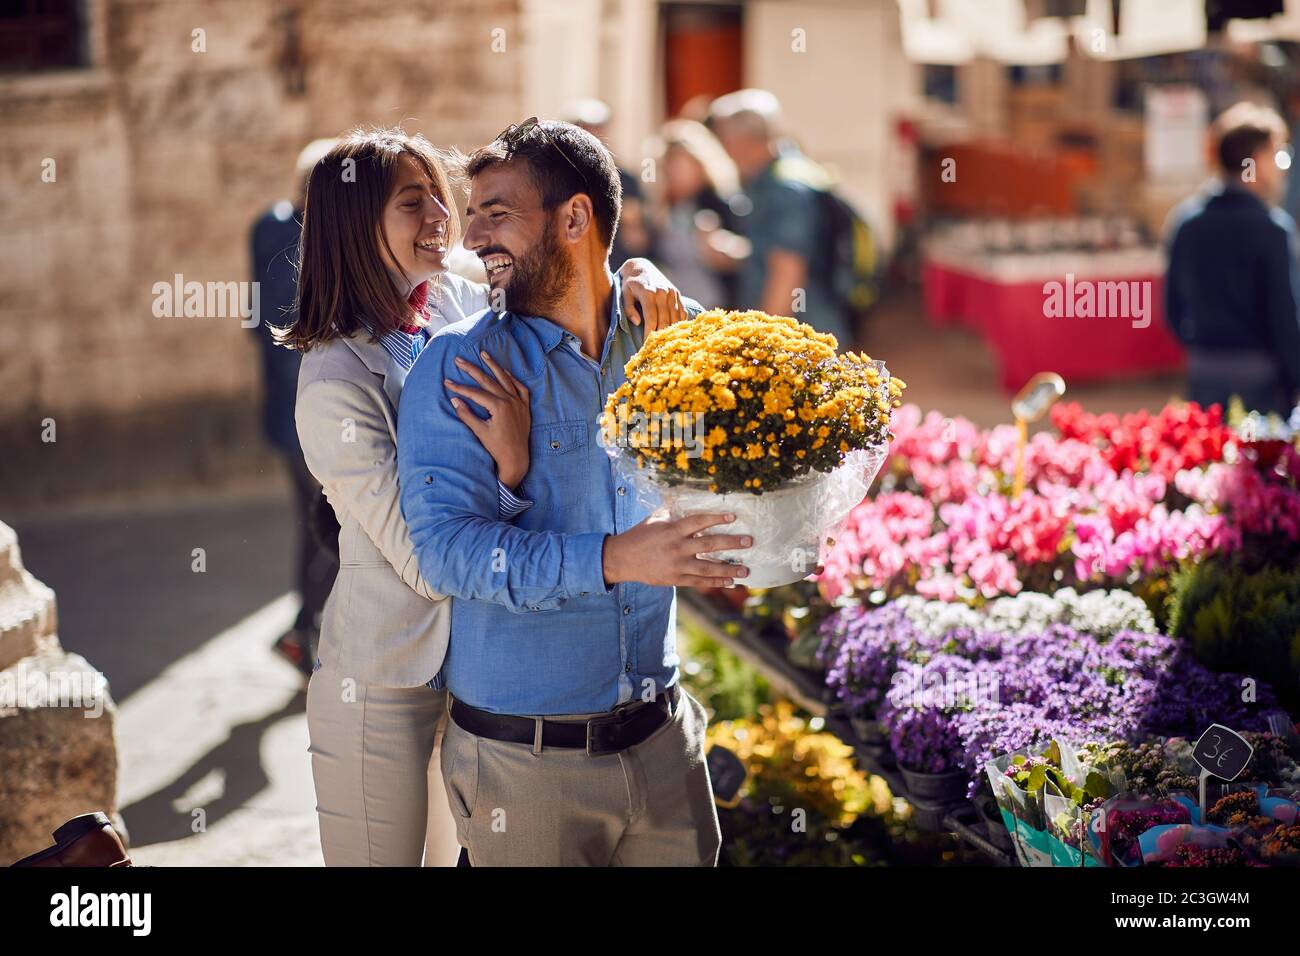 un jeune couple heureux en italie. L'homme achète un seau de fleurs pour sa petite amie Banque D'Images